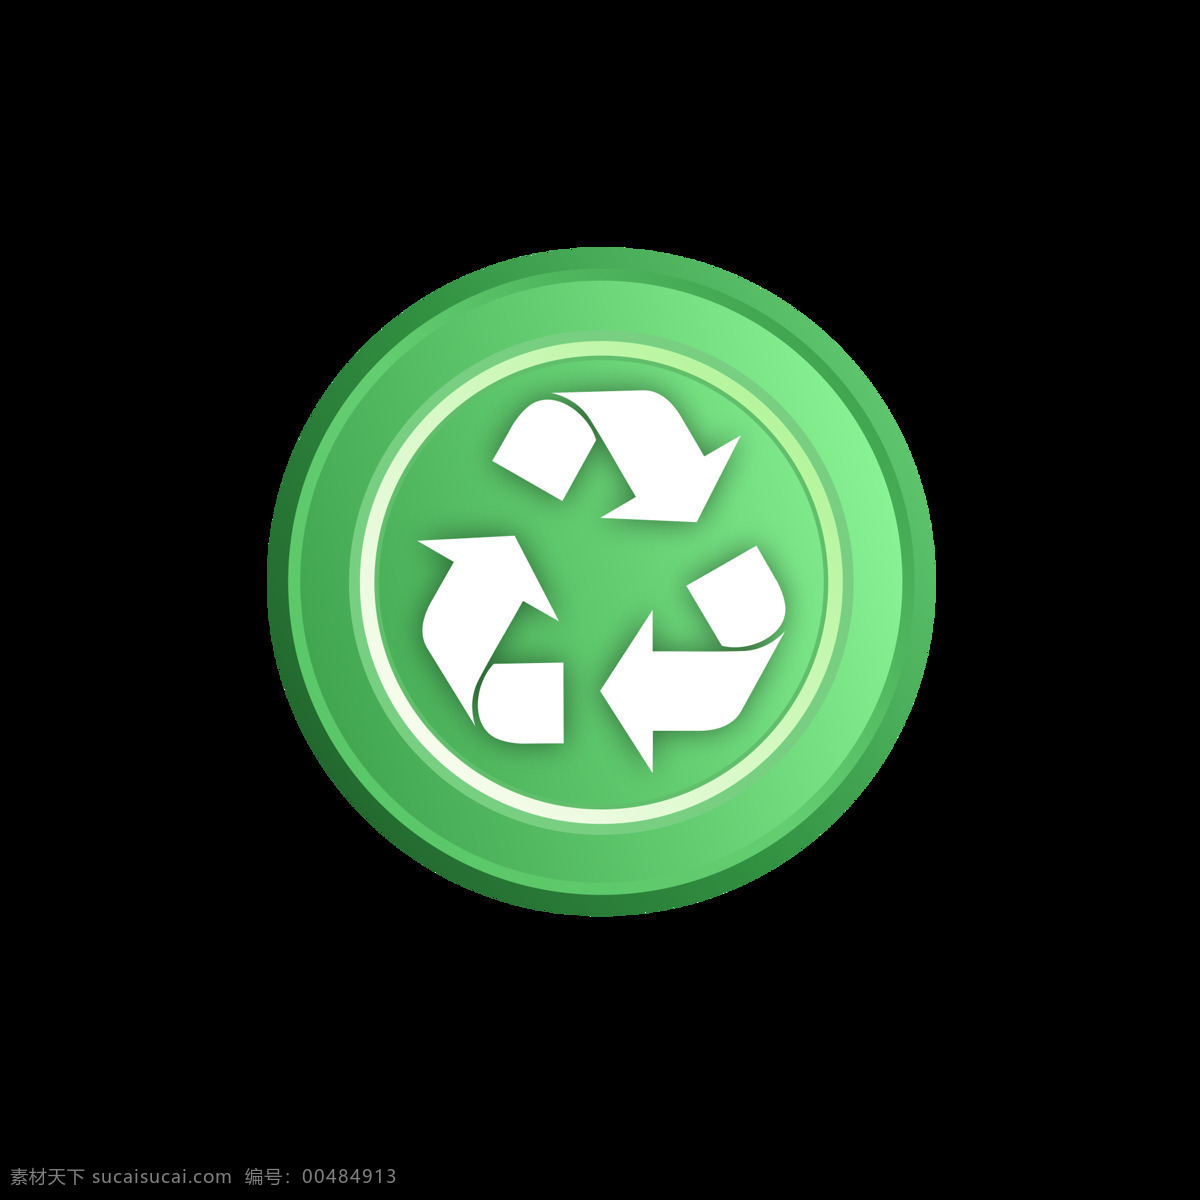 c4d 立体 绿色环保 图标 免 抠 图 绿色 健康 环保 免抠图 装饰 点缀 建模 质感 圆盘 圆环